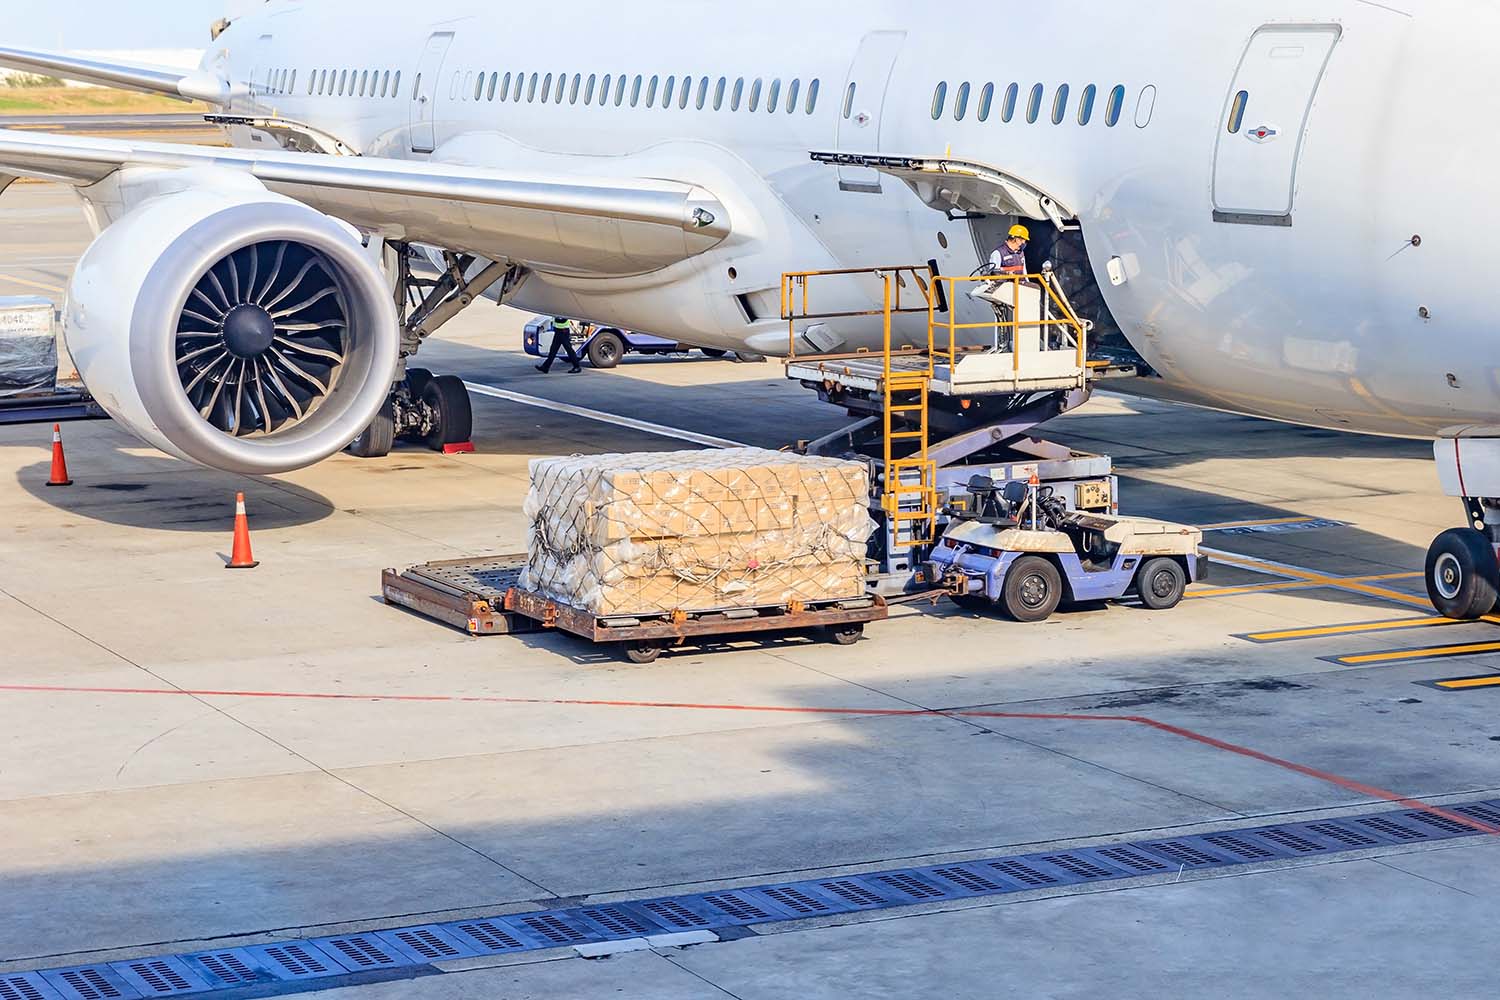 ทำไมการขนส่งสินค้าแบบ air freight ถึงมีค่าใช้จ่ายสูงกว่าขนส่งทั่วไป